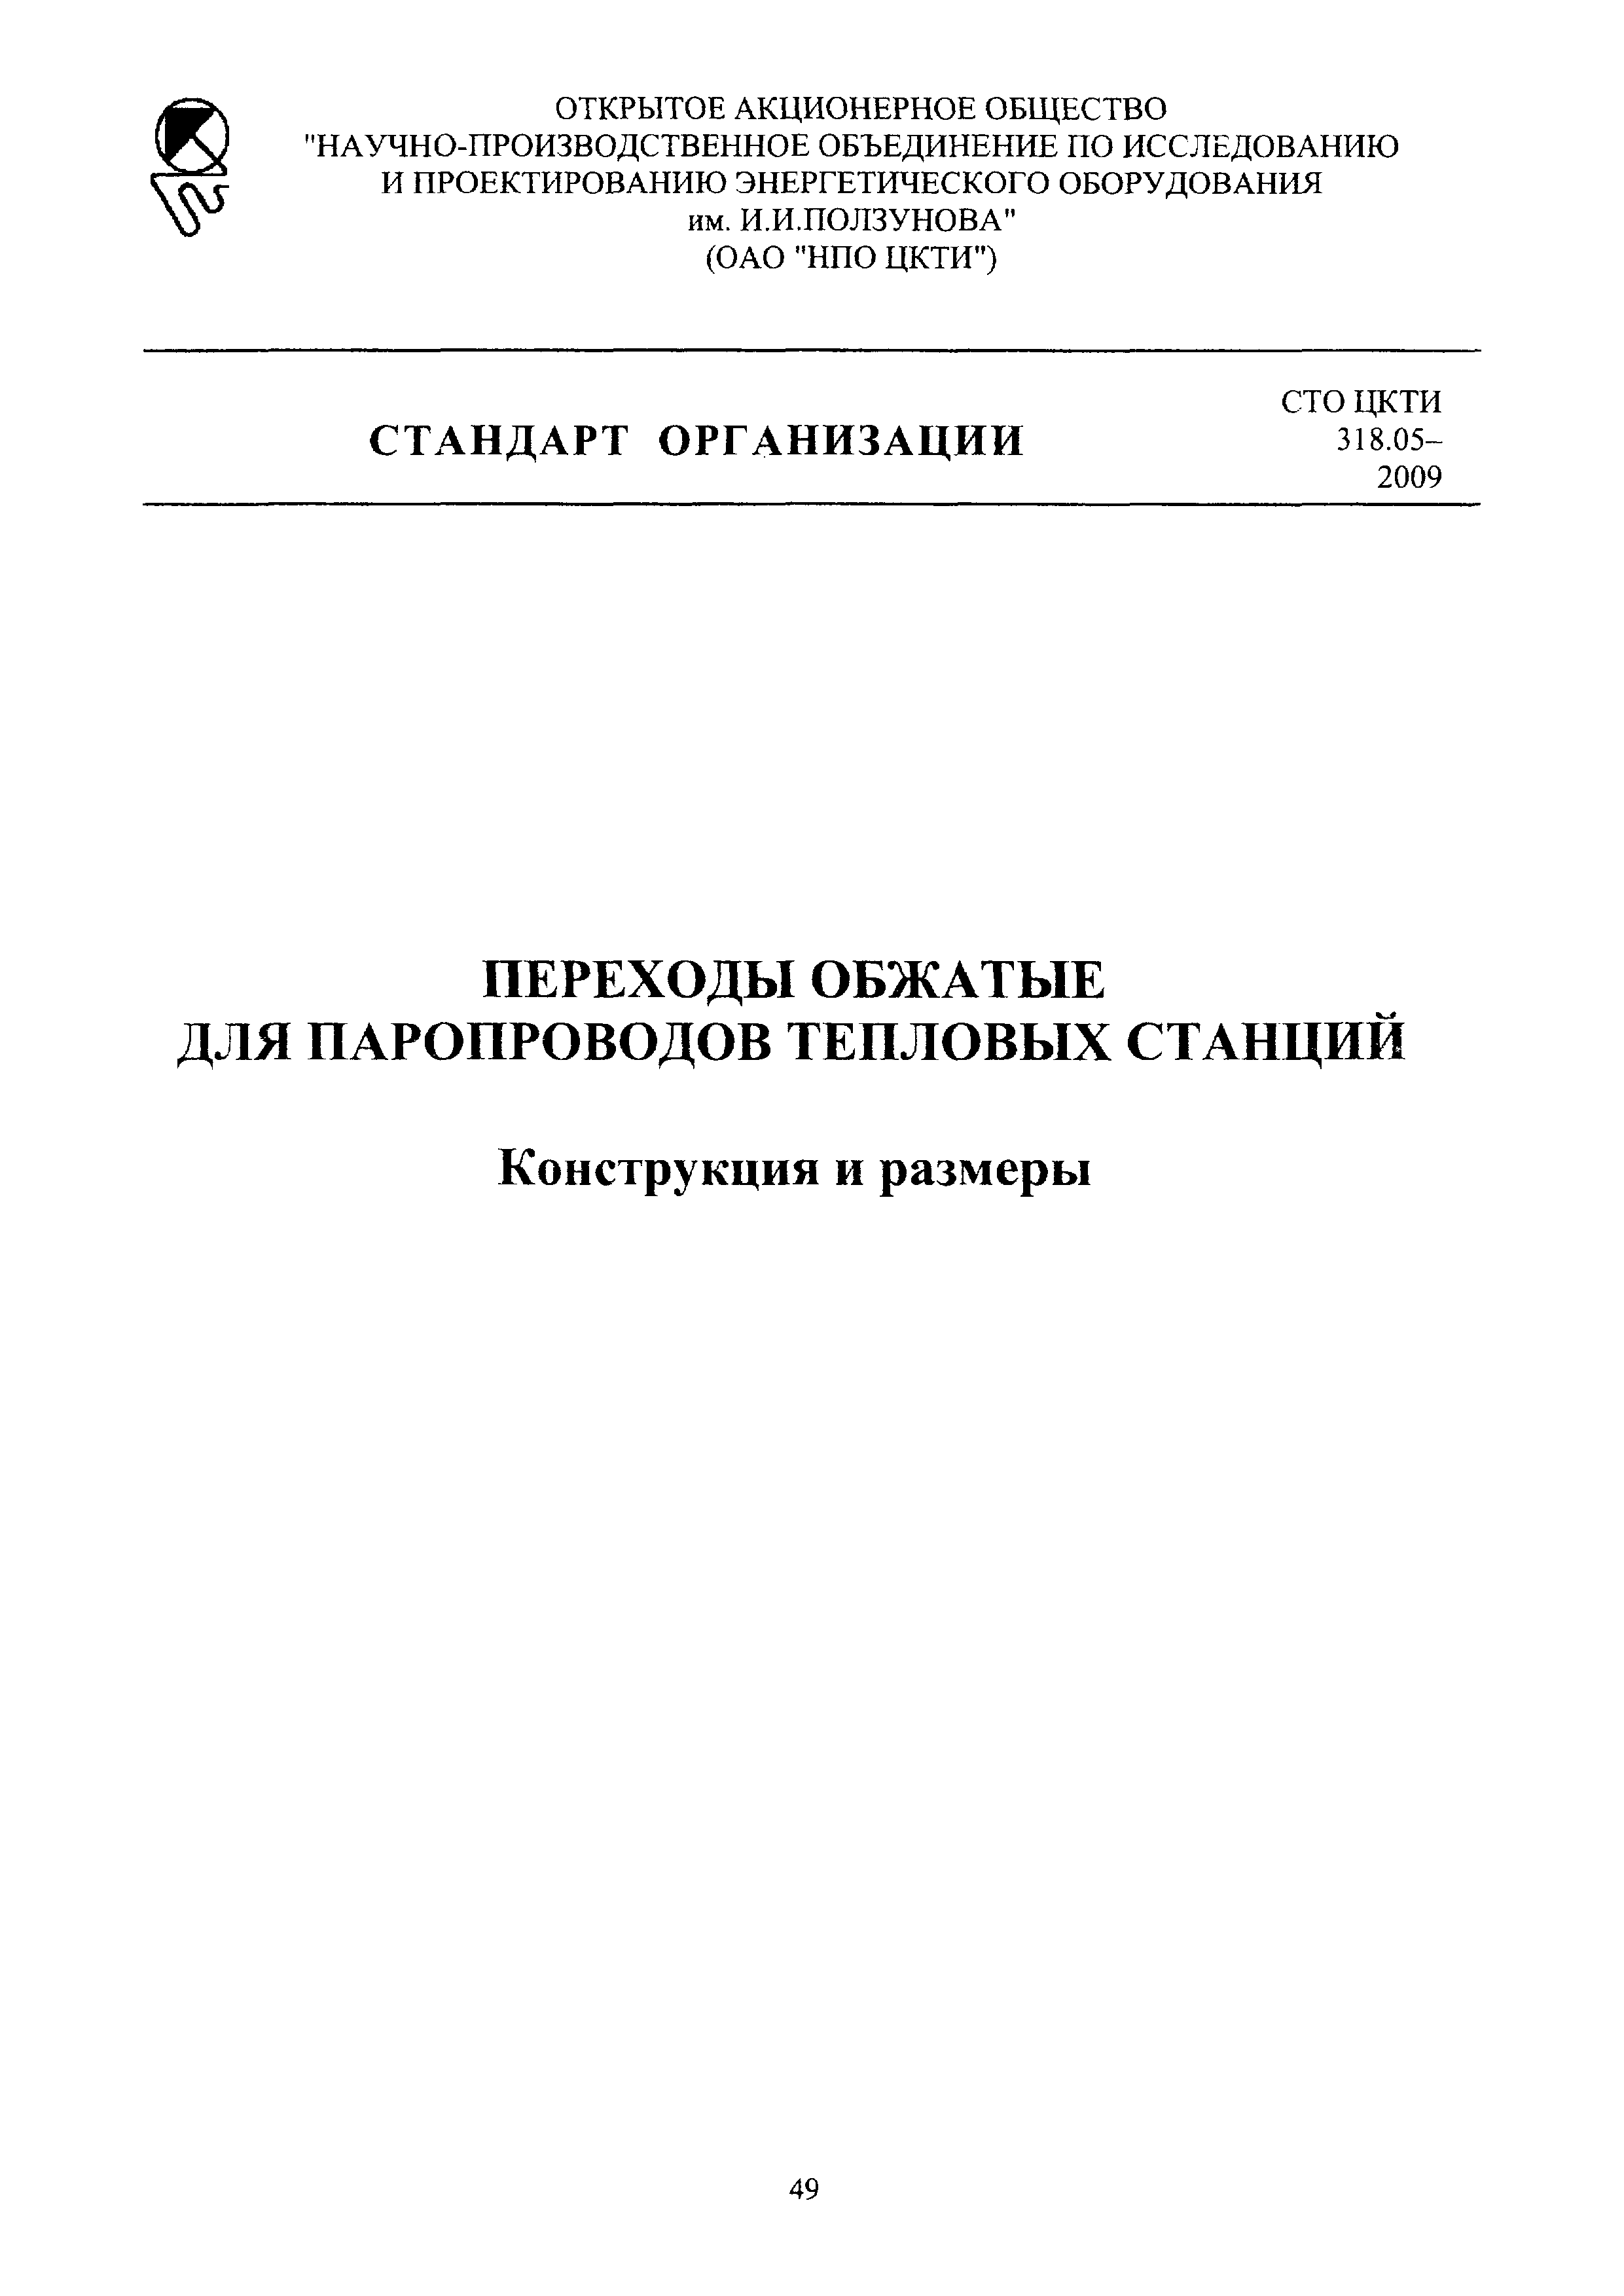 СТО ЦКТИ 318.05-2009